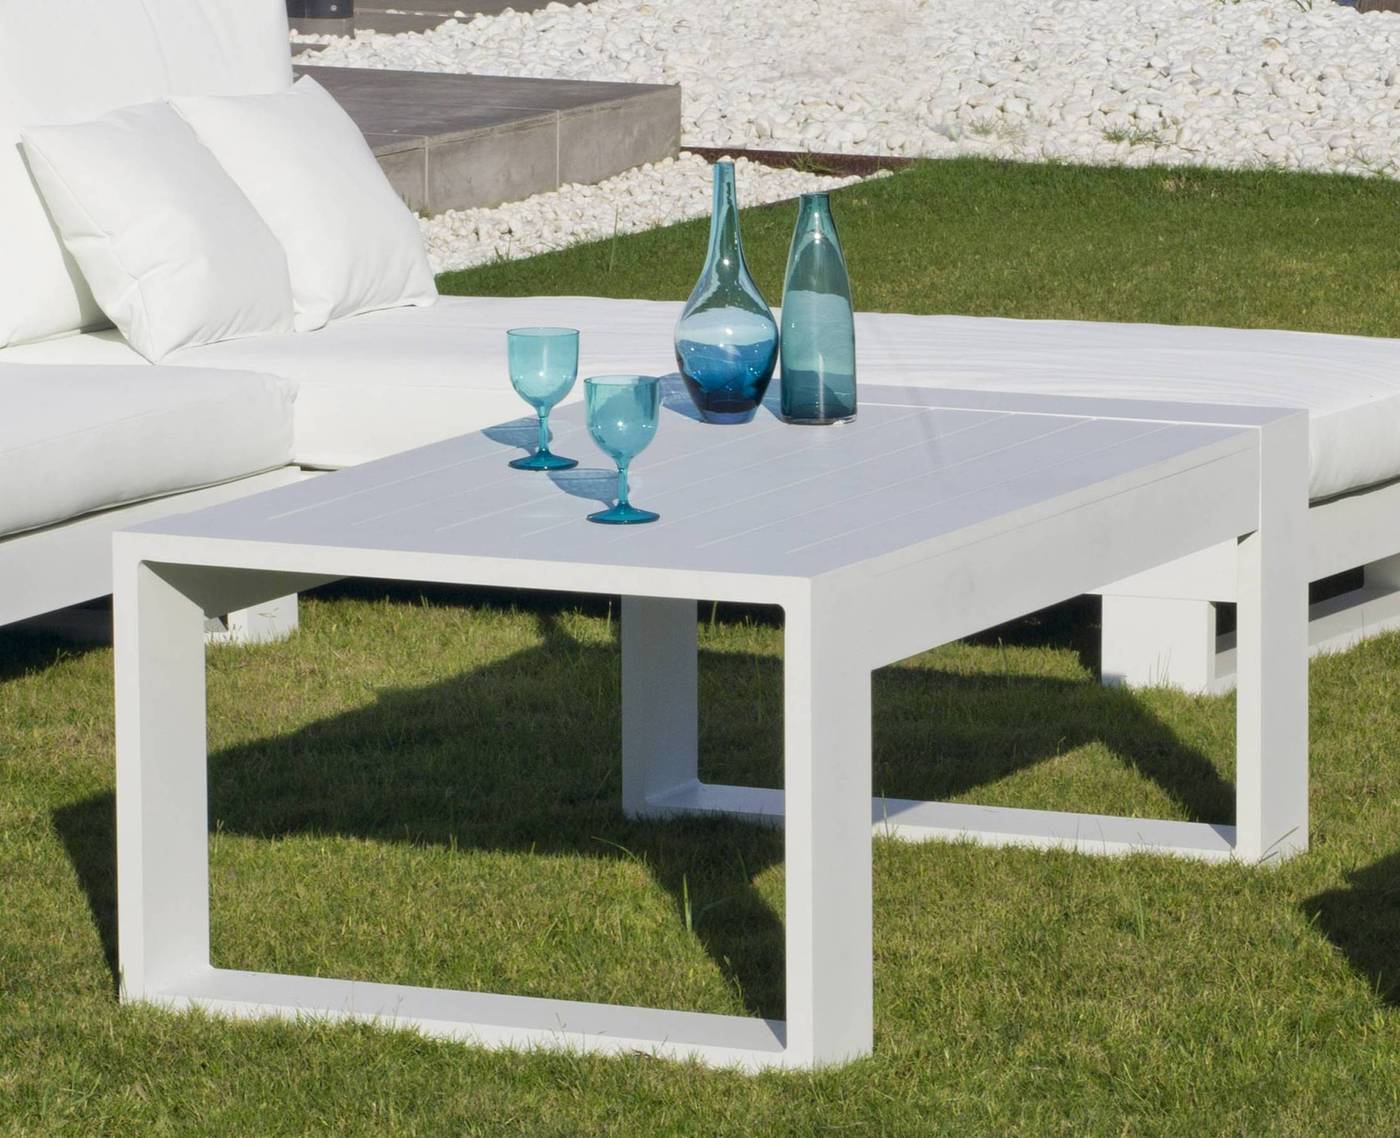 Mesa de centro lujosa, robusta, 100 % aluminio. Disponible en color blanco, antracita y champagne.